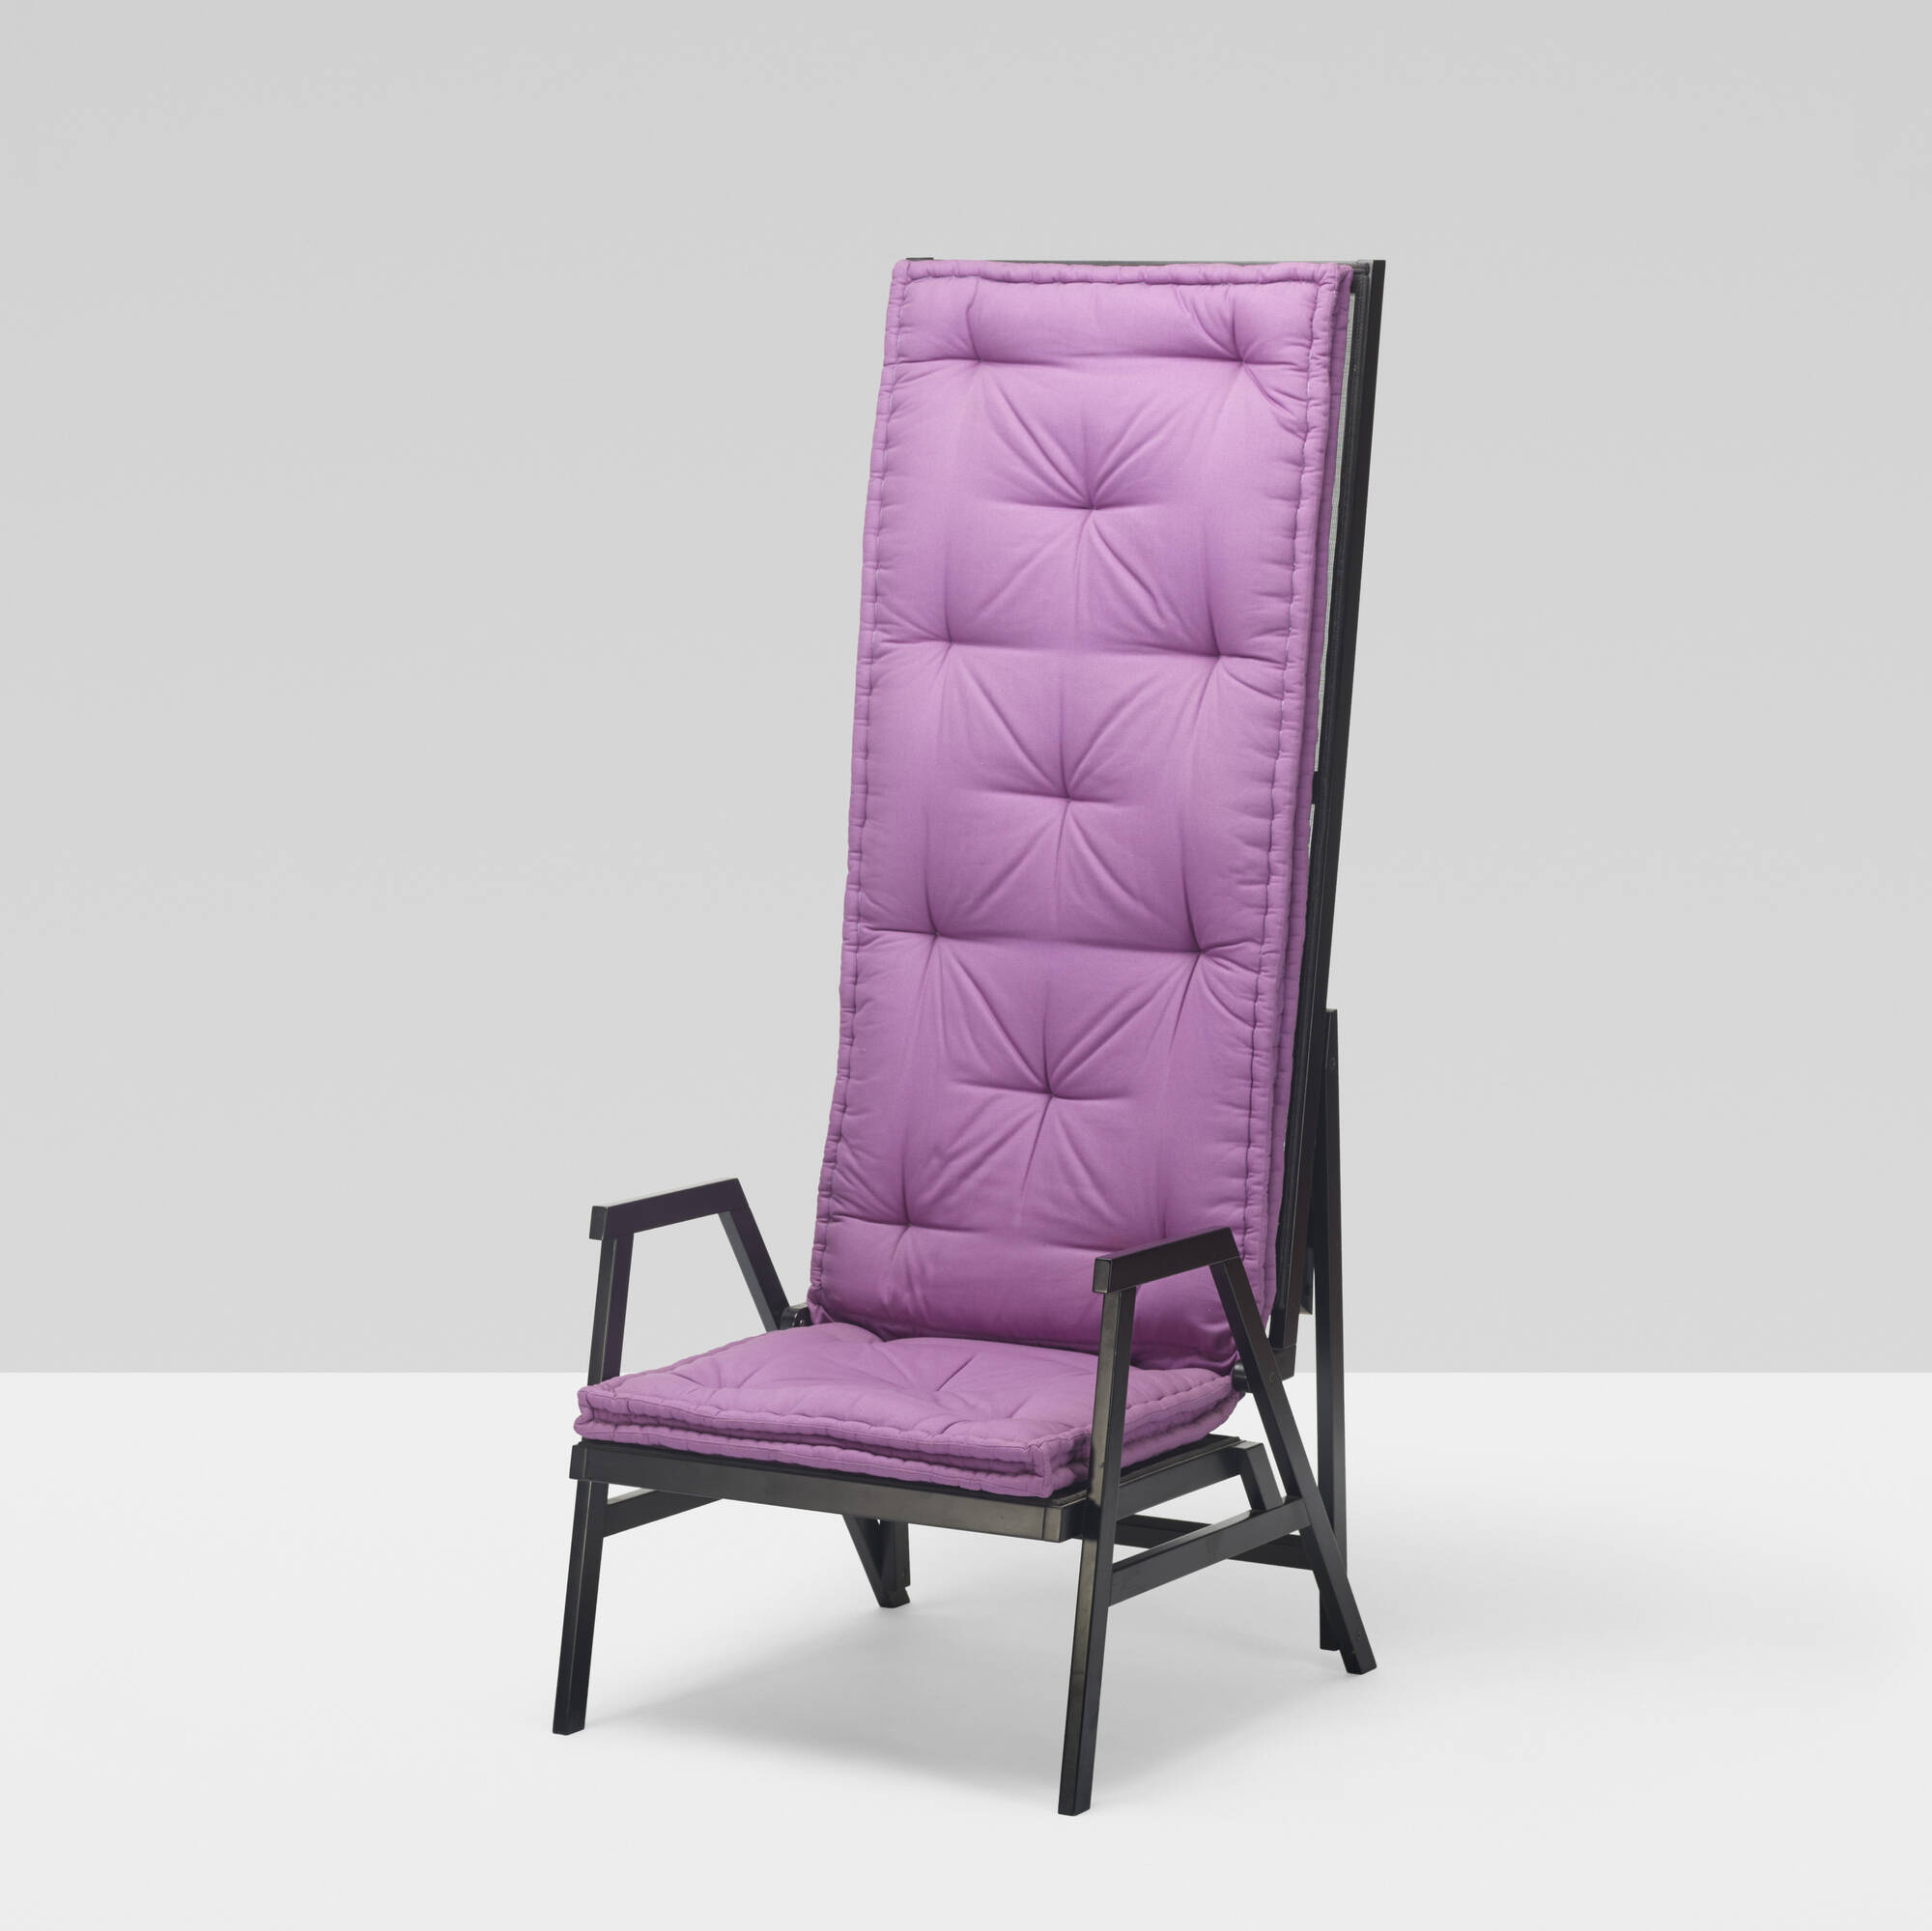 308 Achille Castiglioni Rare Polet Lawn Chair Design 8